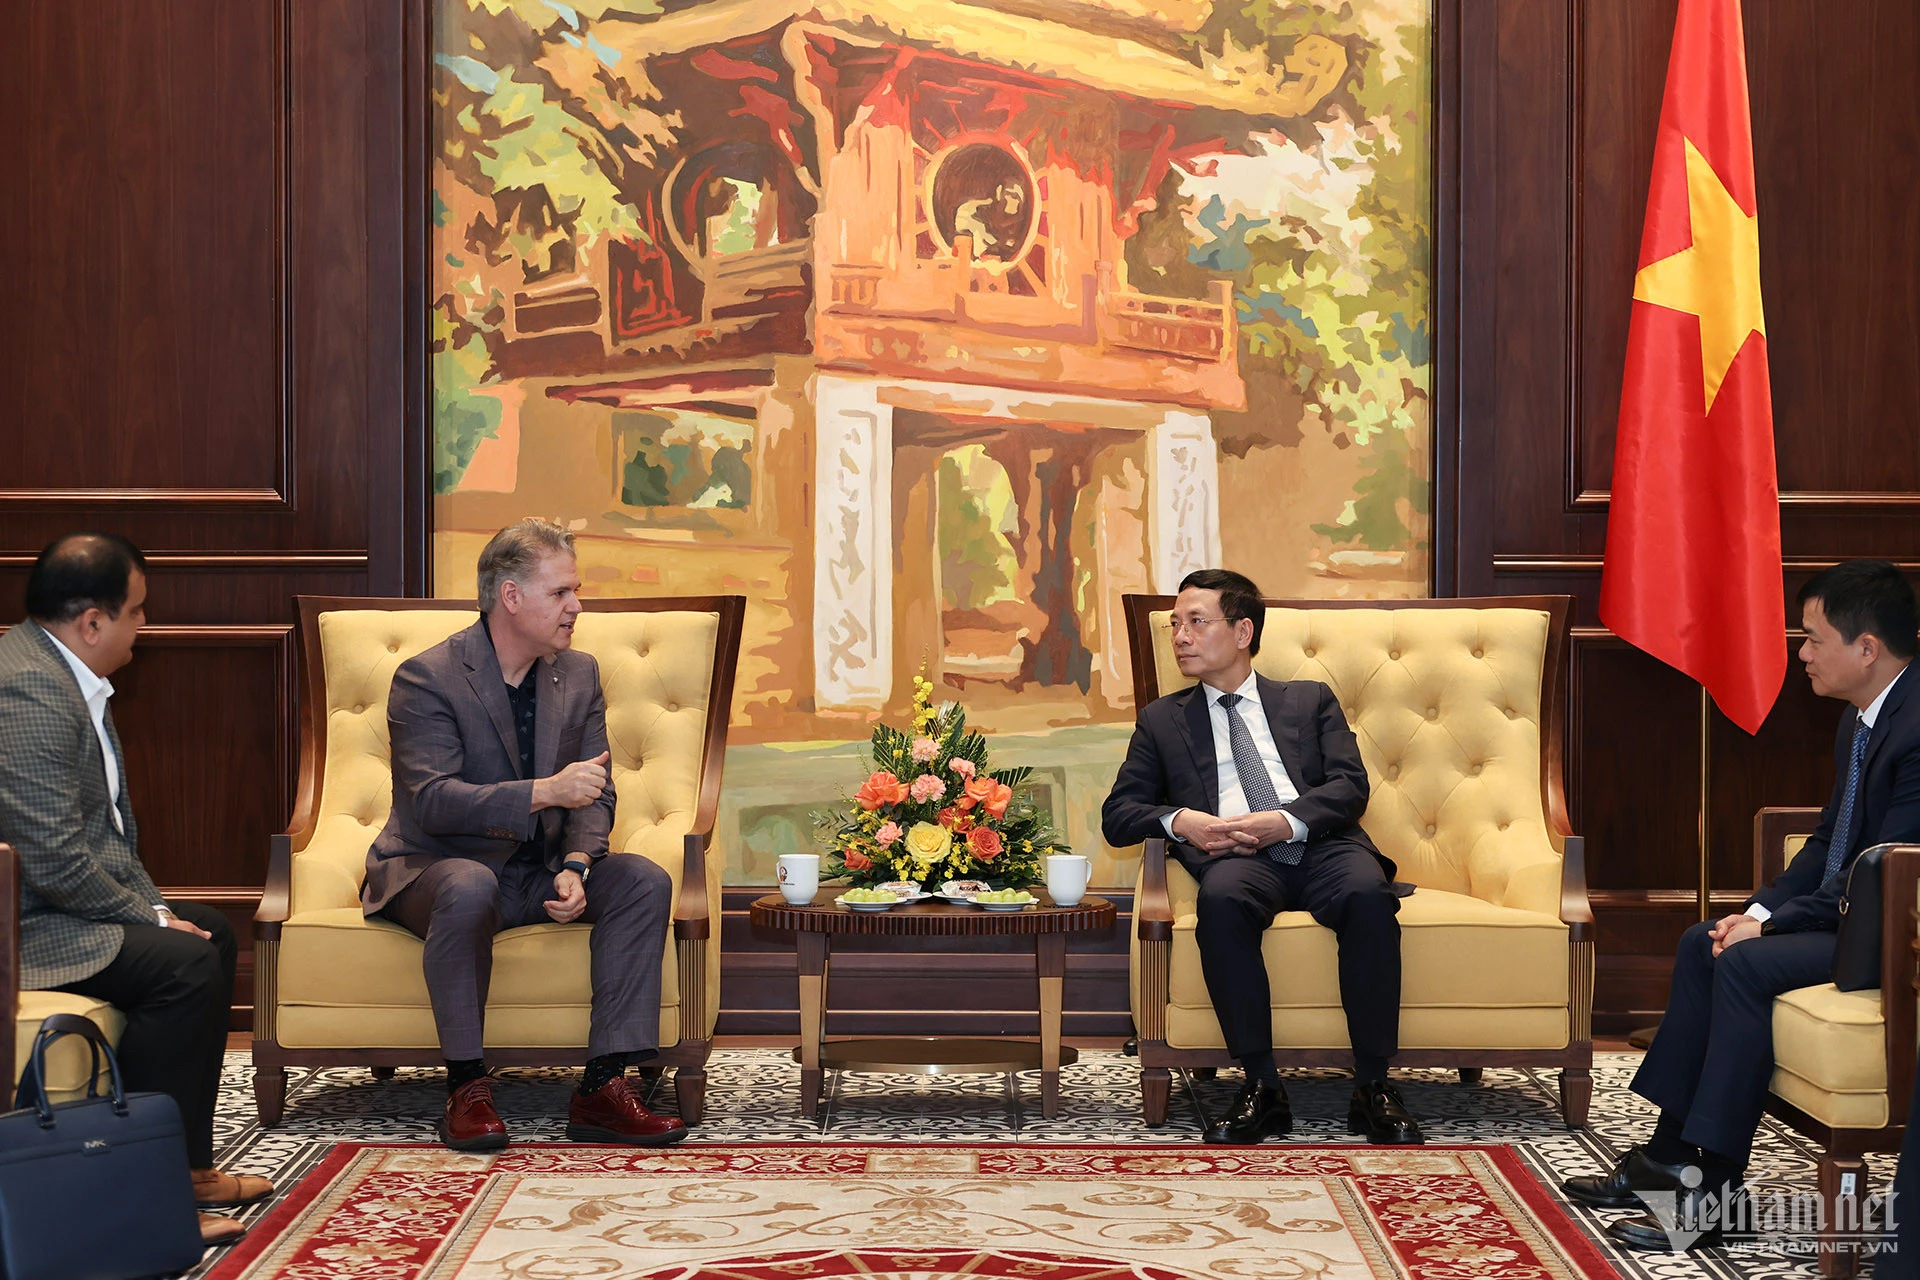 Bộ trưởng Bộ TT&TT Nguyễn Mạnh Hùng tiếp Phó Chủ tịch Nvidia Keith Strier ngày 22/4 tại Hà Nội. Ảnh: Lê Anh Dũng